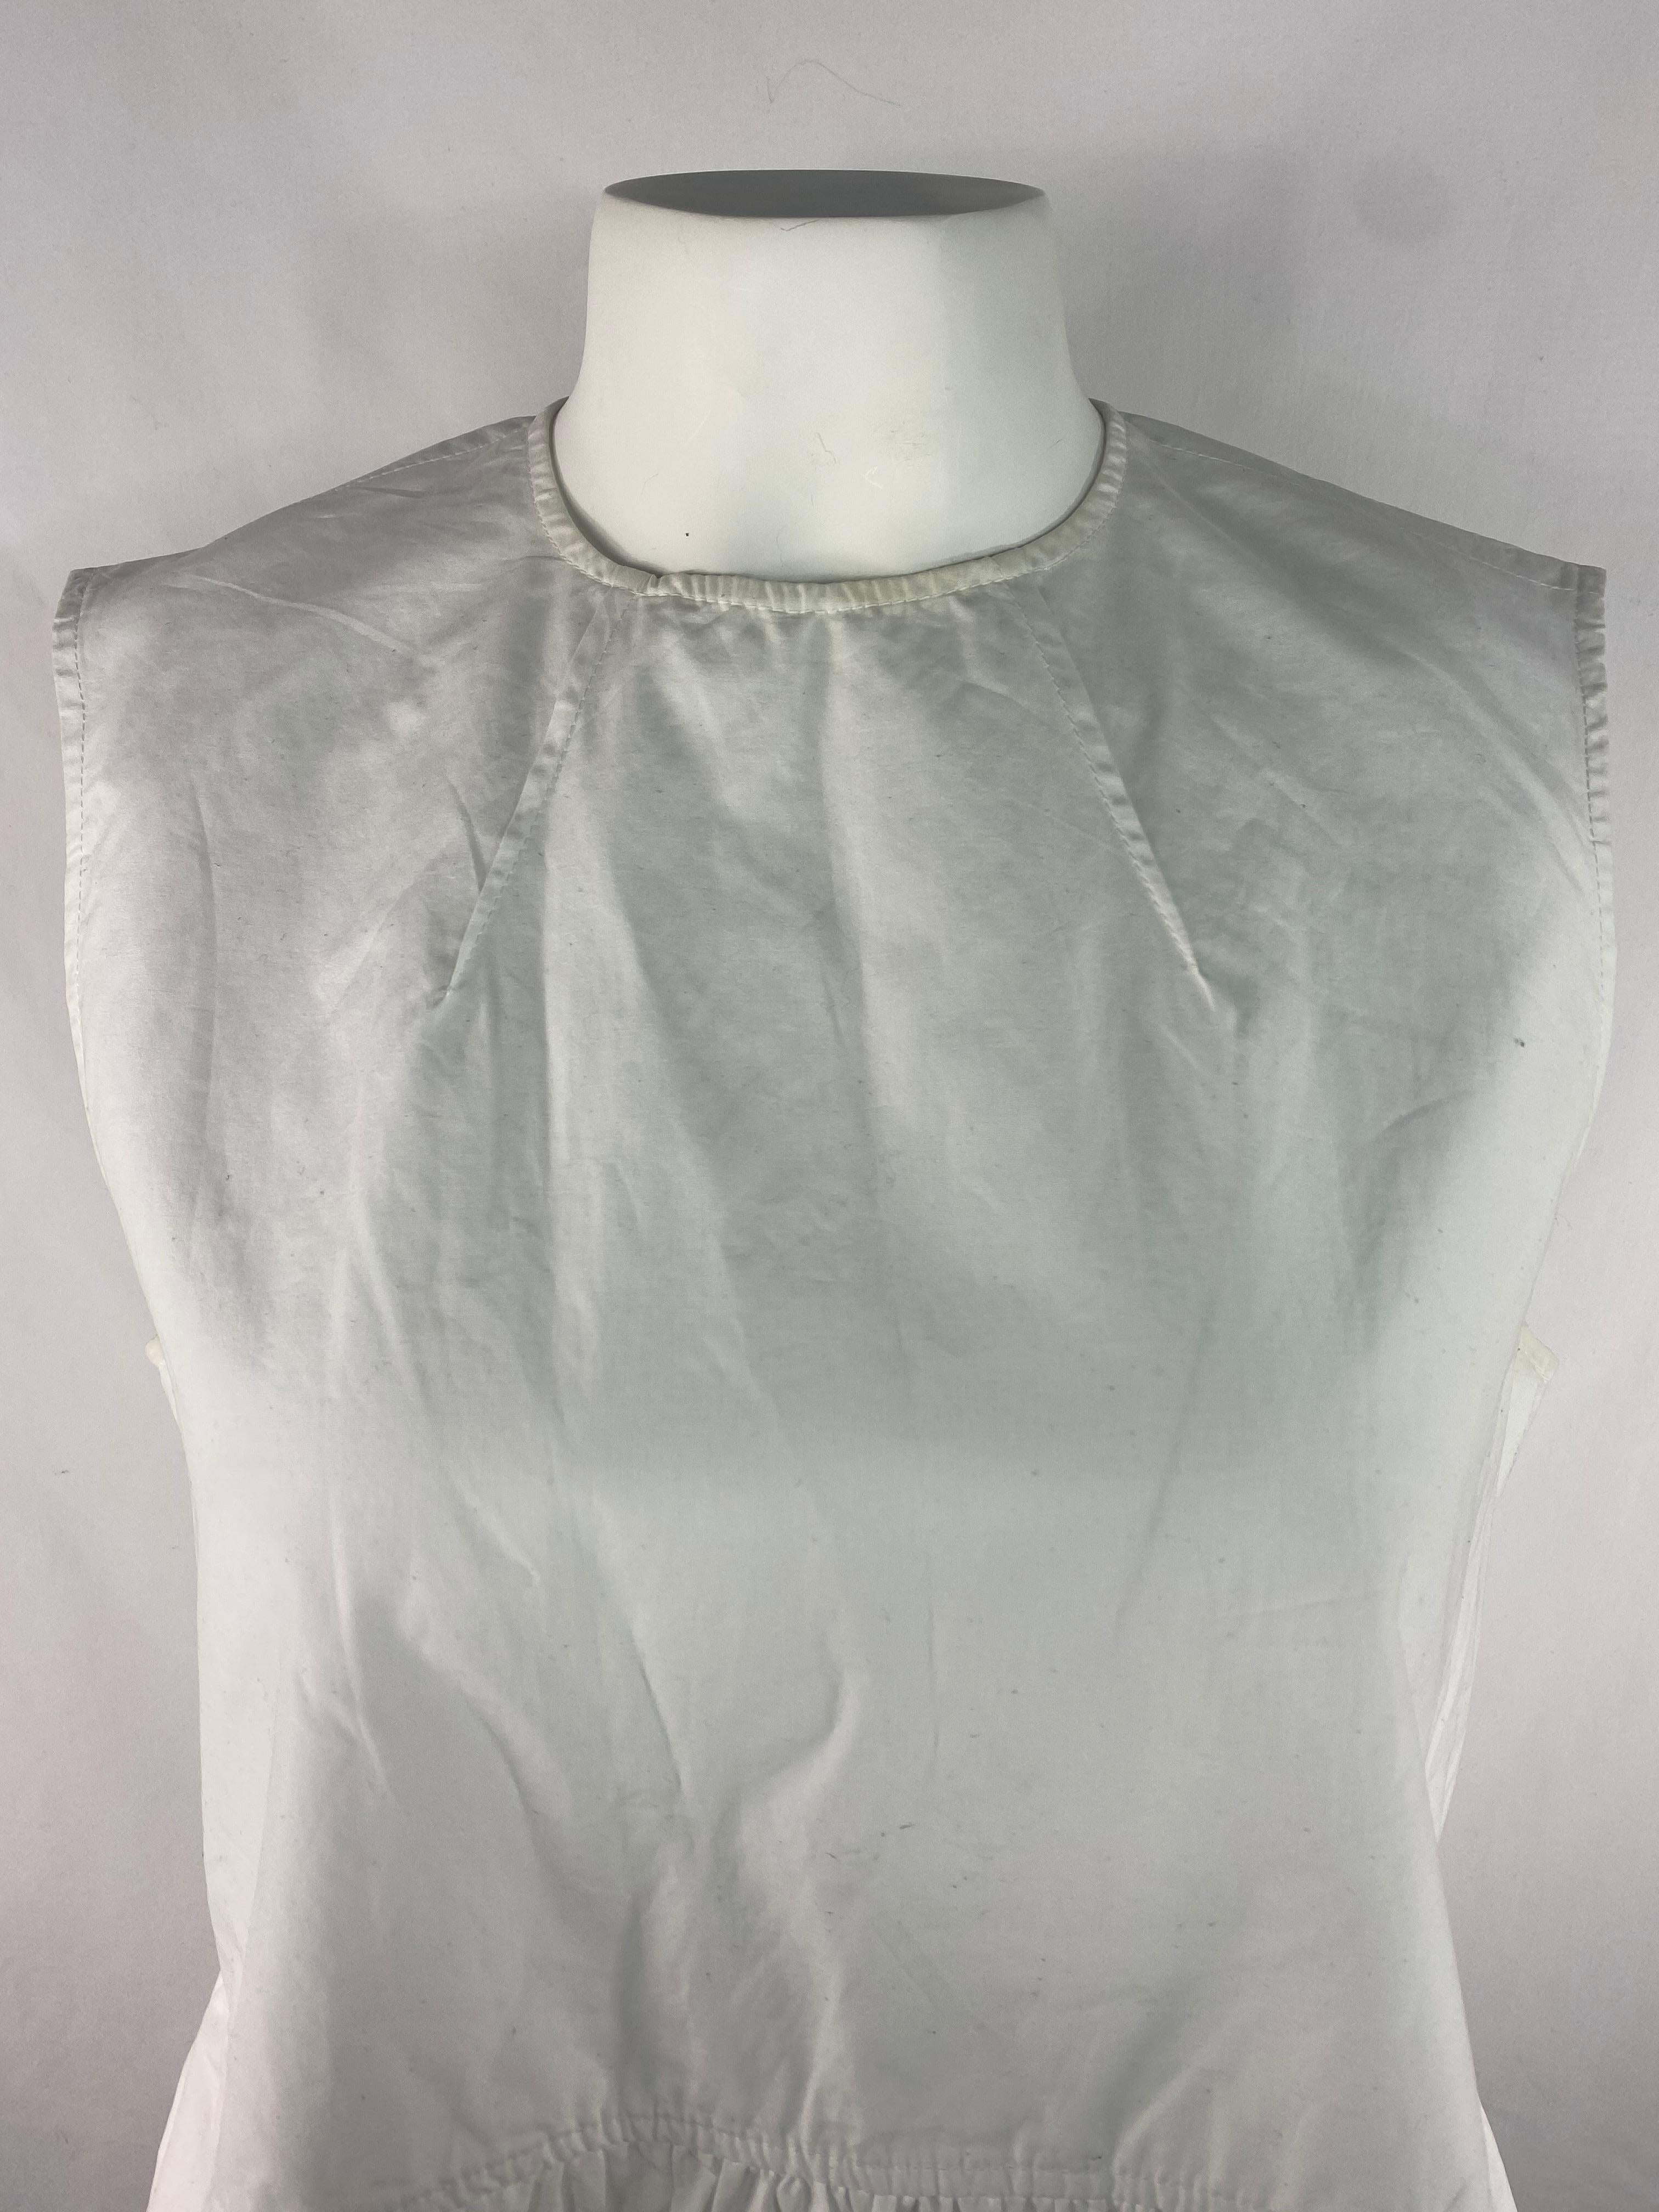 Einzelheiten zum Produkt:

Die Bluse hat einen Rundhalsausschnitt, ein ärmelloses Design mit Schlagdetail von der Taille bis zum unteren Ende des Oberteils und einen Reißverschluss hinten.
Hergestellt in Italien